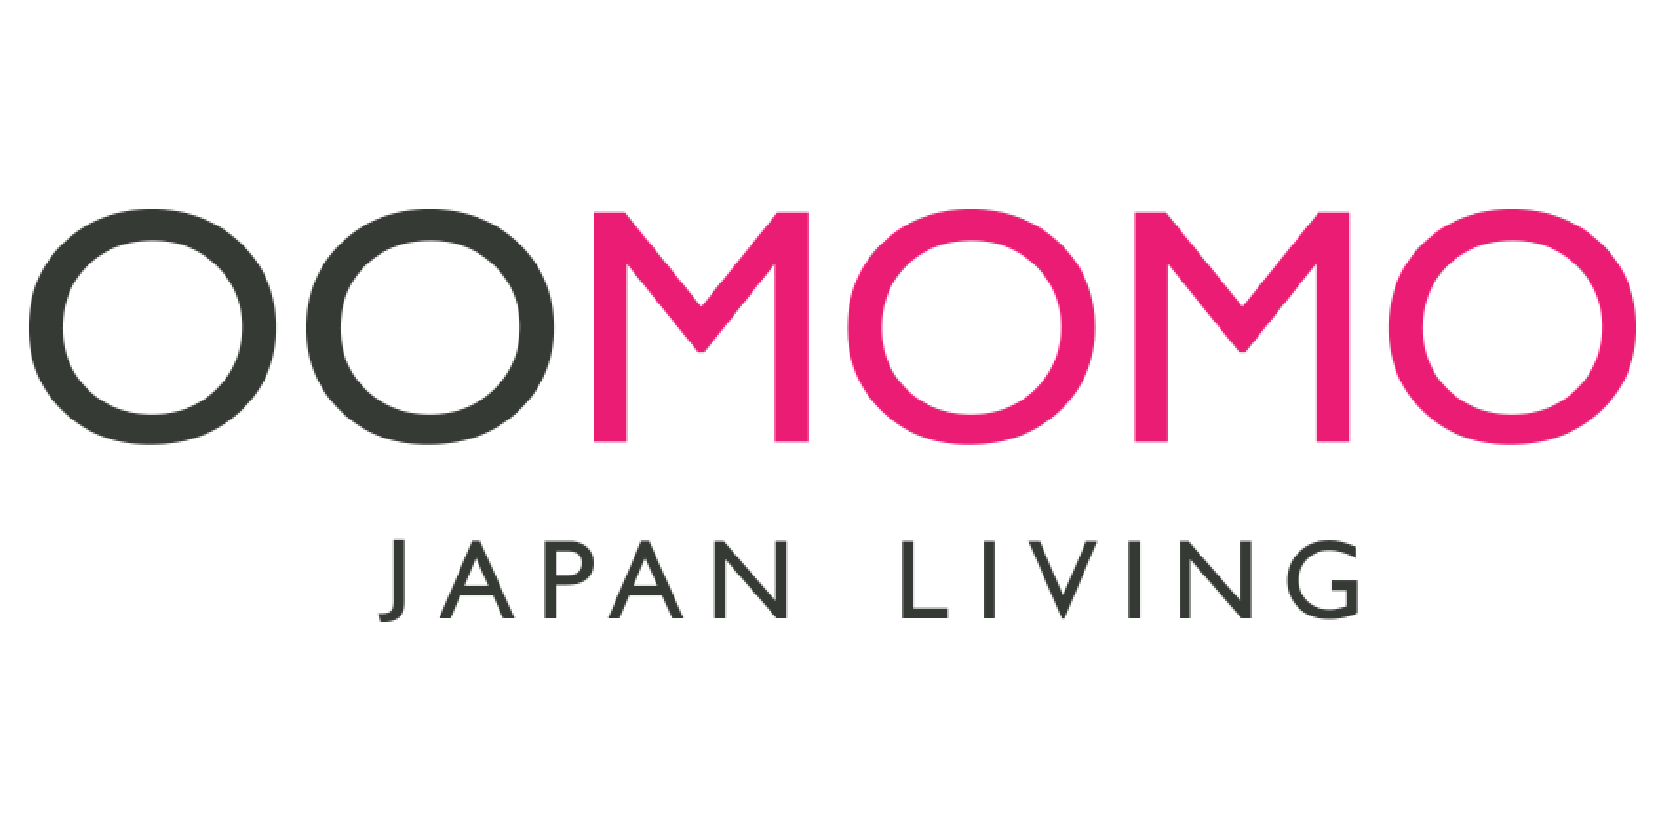 oomomo japan living